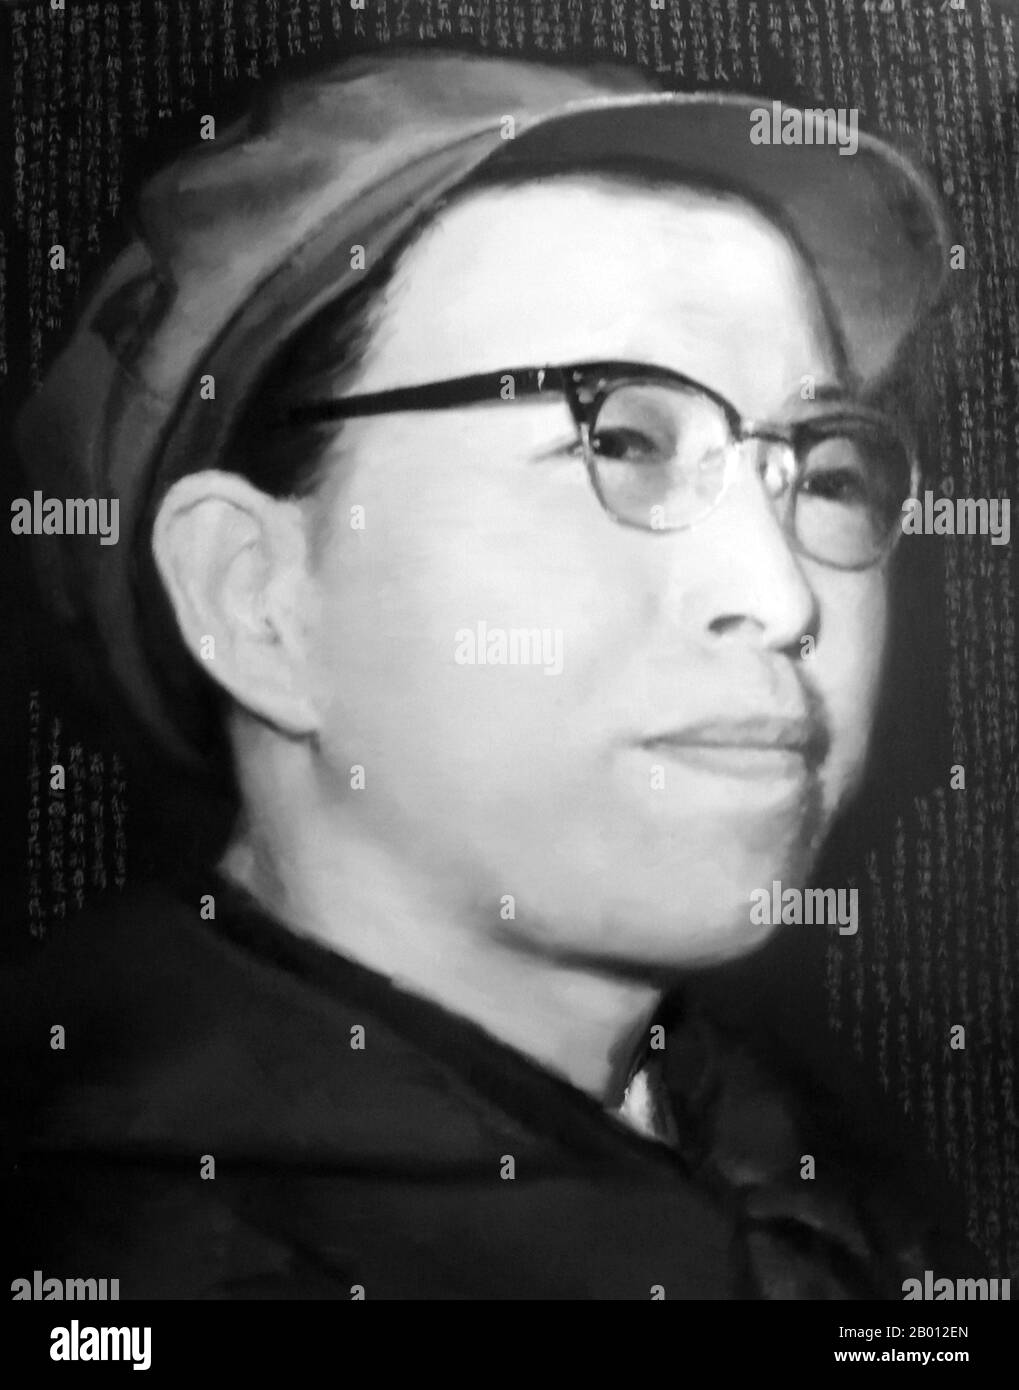 Cina: Jiang Qing (1914-1991), conosciuto anche come Madame Mao, al culmine del suo potere nella rivoluzione culturale, c.. Jiang Qing (Chiang CH'ing, 1914 marzo 14 – 1991 maggio 1969) è stato uno pseudonimo usato dall'ultima moglie del leader cinese Mao Zedong e dal maggiore esponente del Partito comunista cinese. È andato dal nome della fase LAN Ping durante la sua carriera di recitazione ed è stato conosciuto da vari altri nomi durante la sua vita. Sposò Mao a Yan'an nel novembre 1938, ed è a volte chiamata Madame Mao nella letteratura occidentale, servendo come prima signora della Cina comunista. Foto Stock